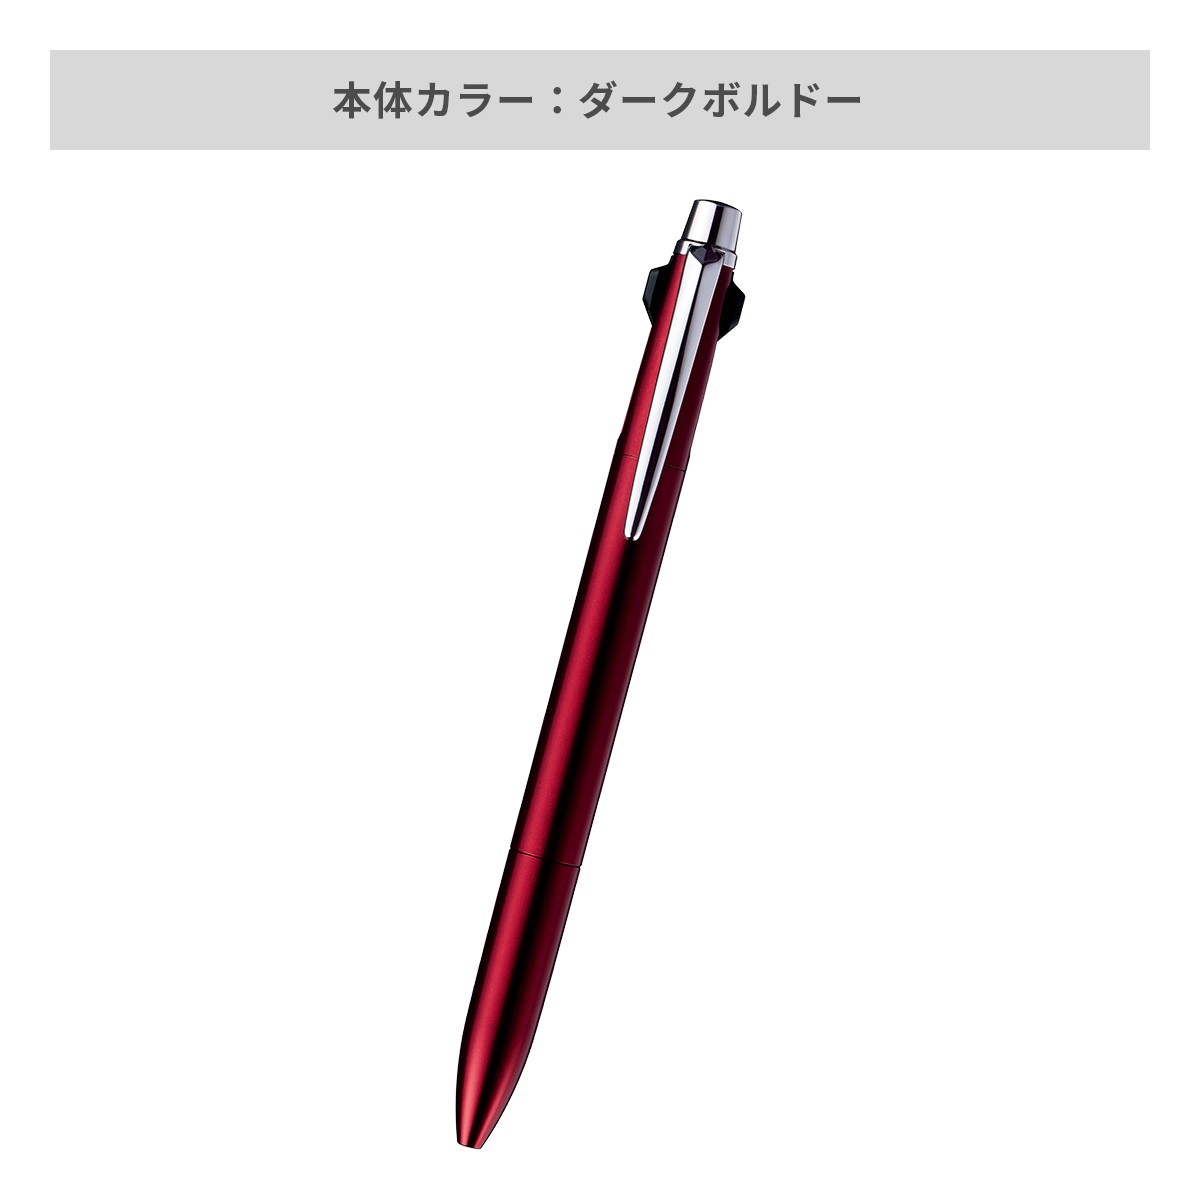 【短納期】三菱鉛筆 ジェットストリーム プライム 3色ボールペン 0.5mm【名入れボールペン / レーザー彫刻】 画像5